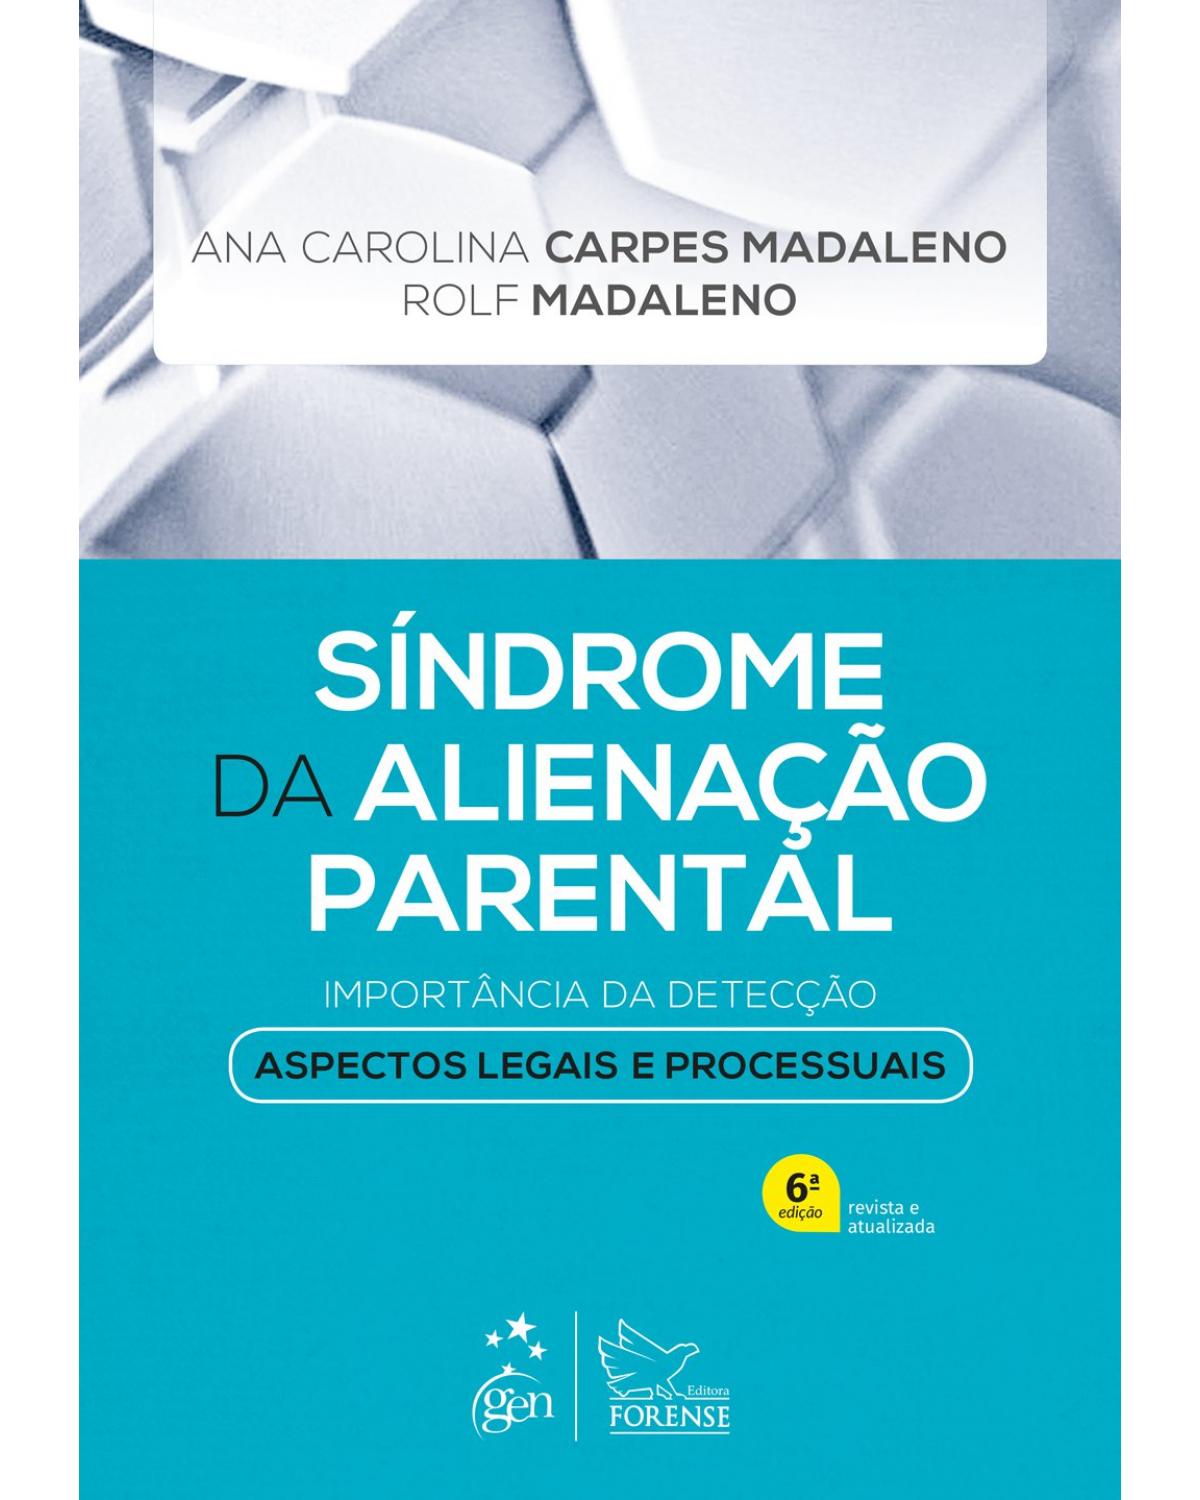 Síndrome da alienação parental - importância da detecção: aspectos legais e processuais - 6ª Edição | 2019